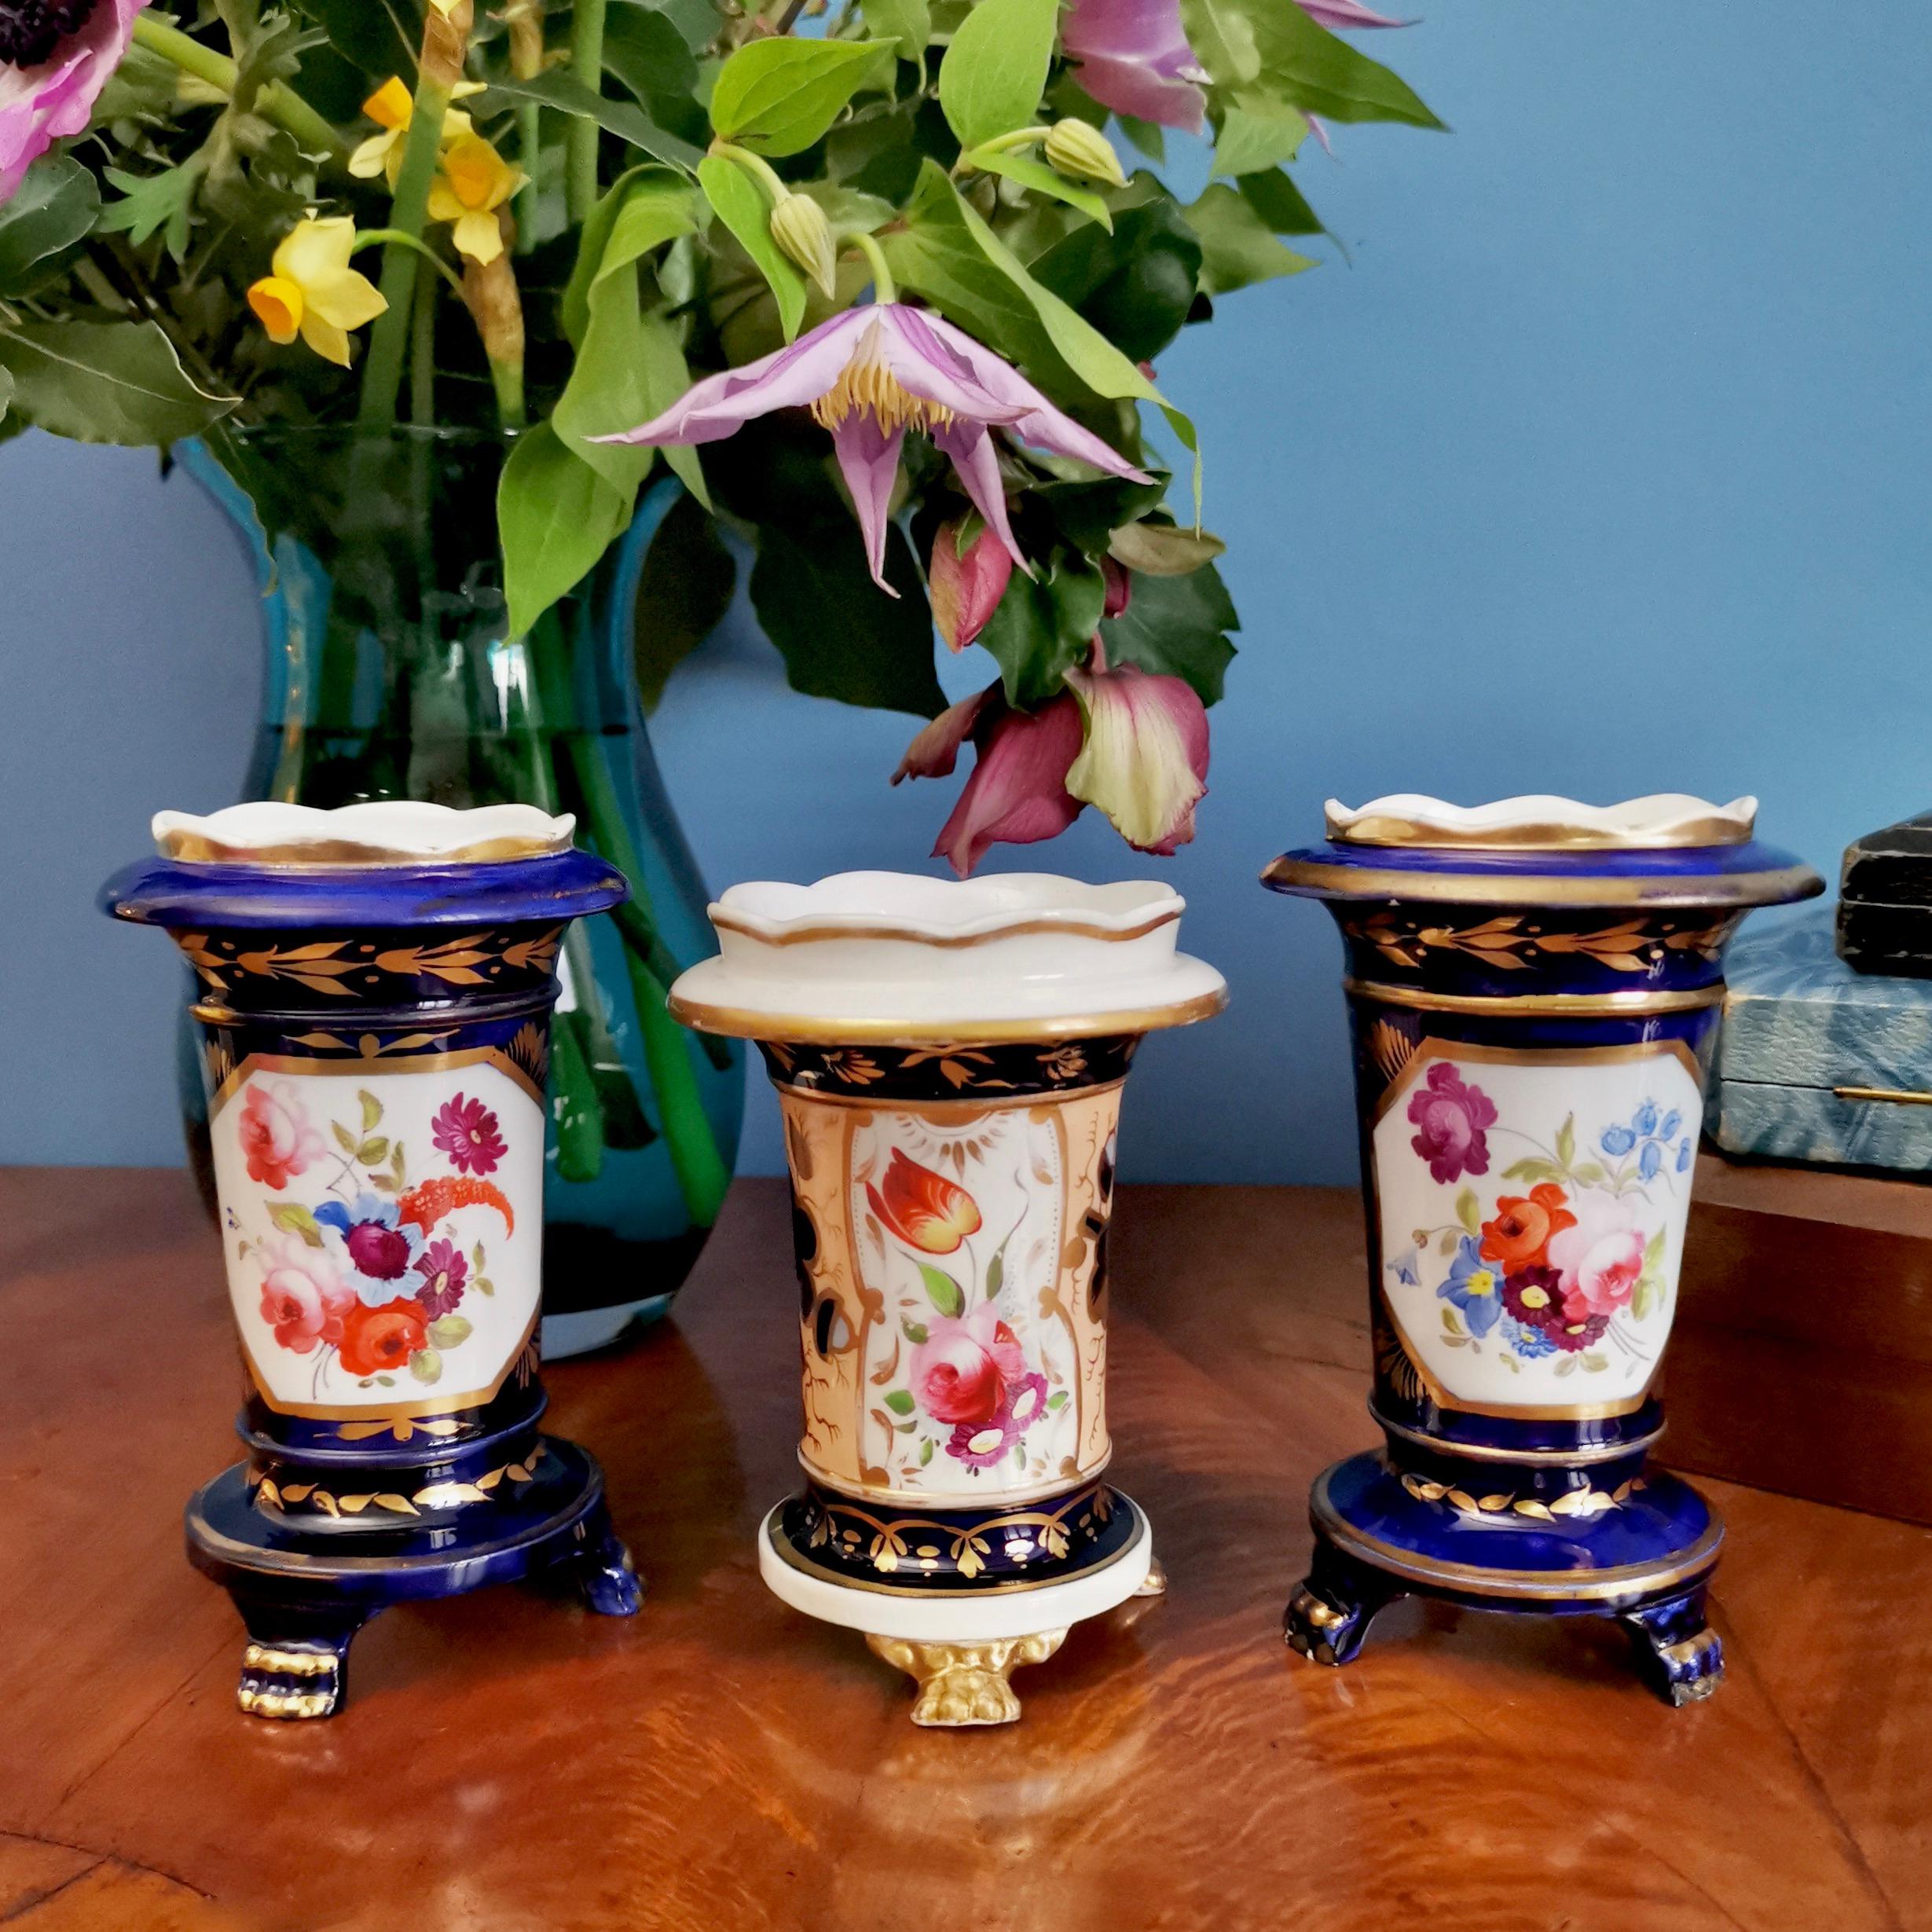 Il s'agit d'un ensemble de trois petits vases renversés réalisés par un fabricant inconnu du Staffordshire vers 1820, c'est-à-dire à l'époque de la Régence. Deux des vases sont bleu cobalt, un est saumon, et tous les trois ont une belle dorure et